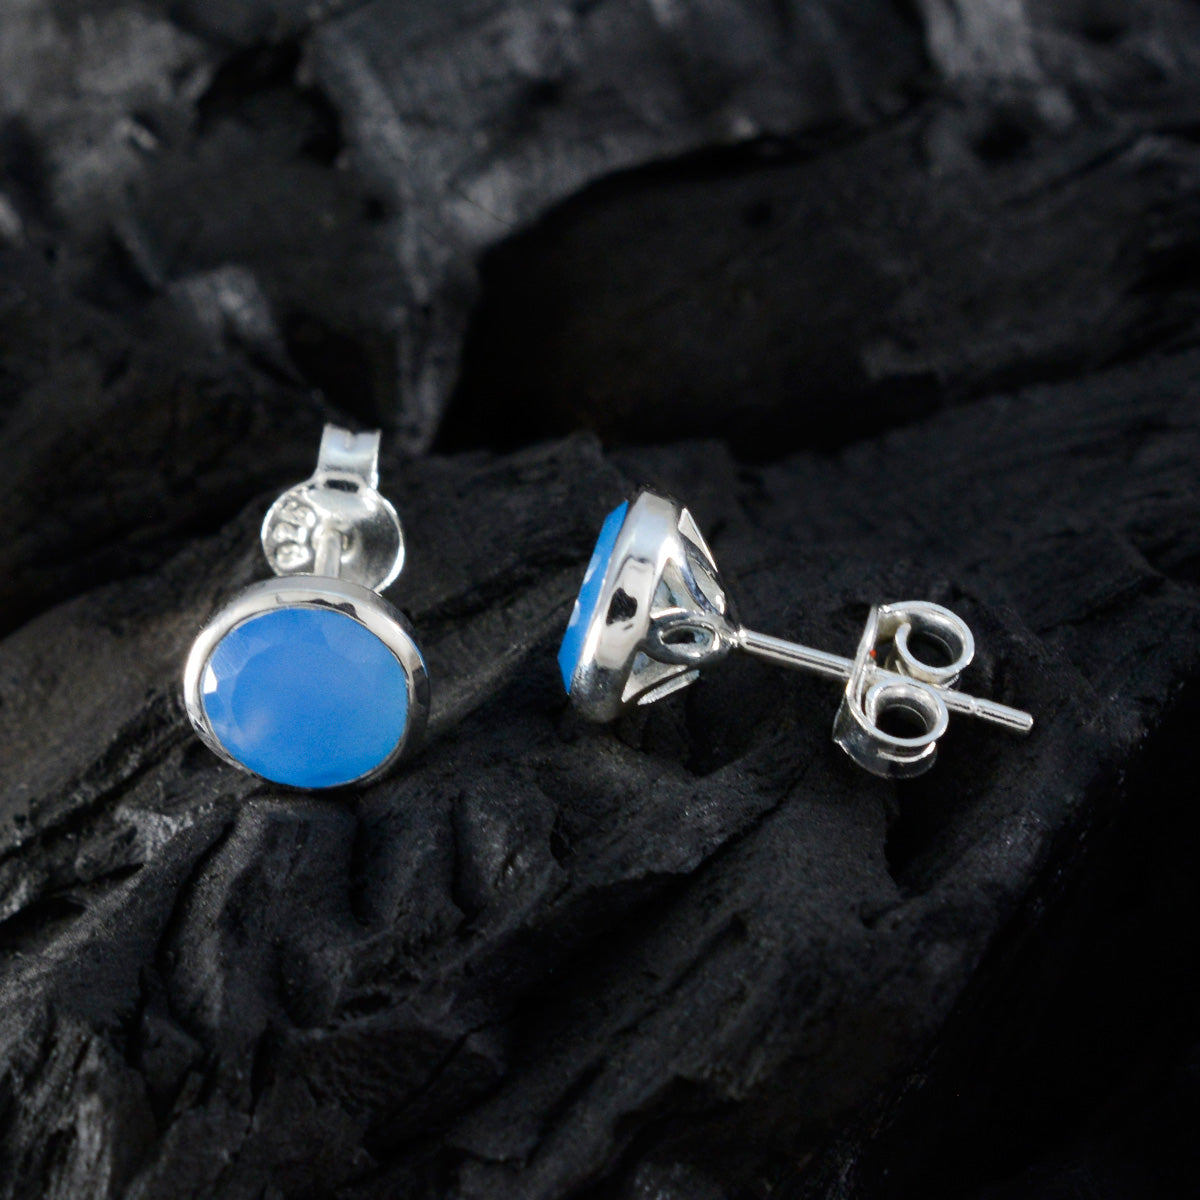 riyo tilltalande sterling silver örhänge för demoiselle blå kalcedon örhänge infattning blå örhänge örhänge